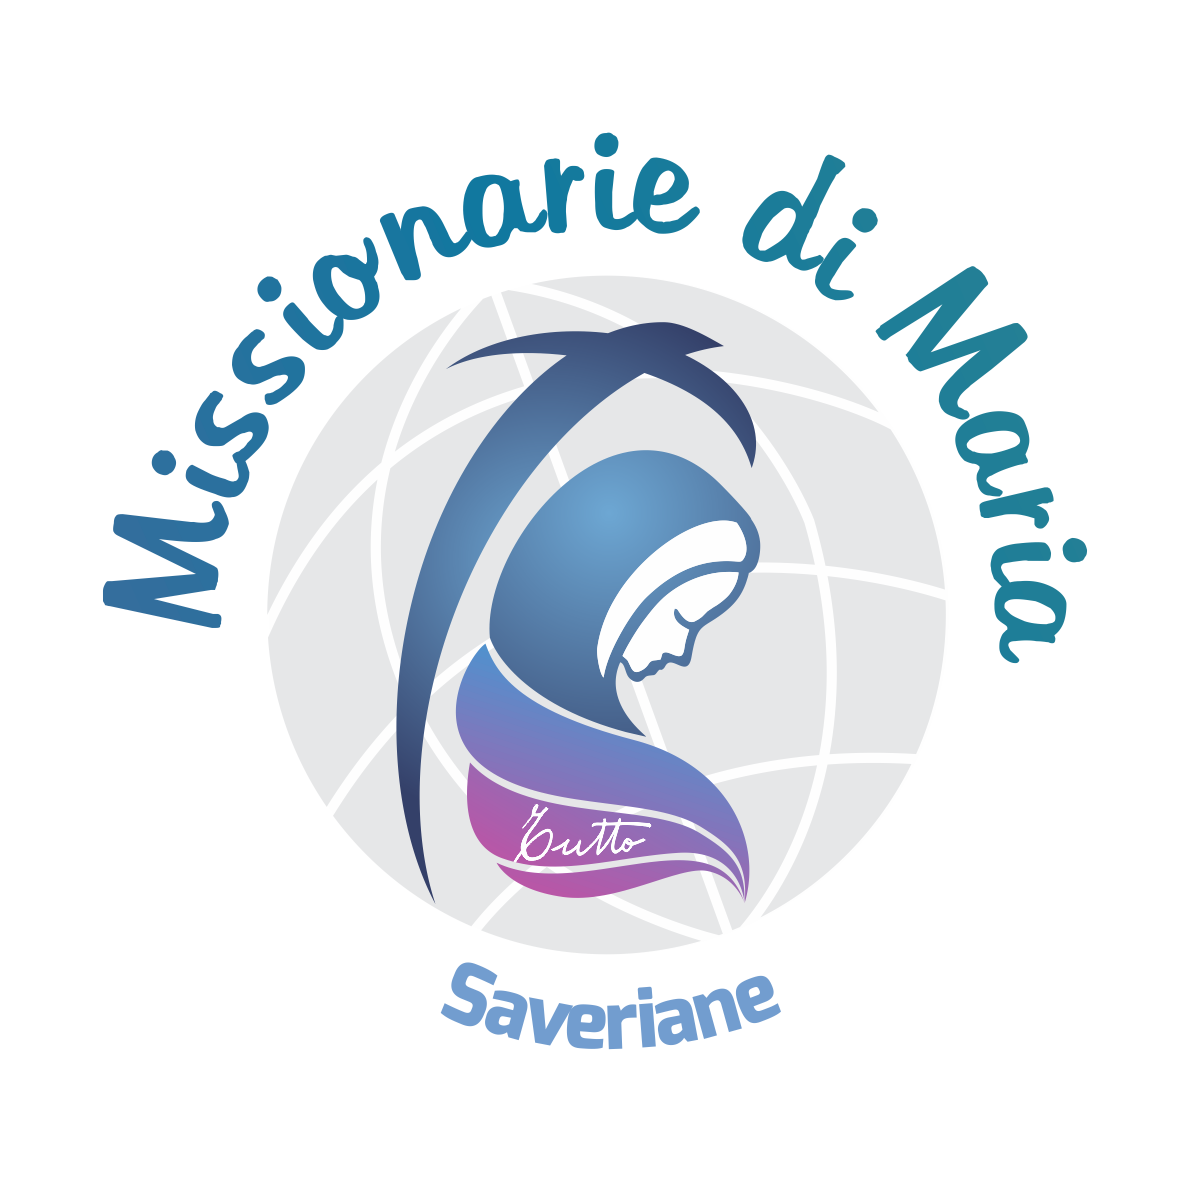 Missionarie di Maria Saveriane - Parma